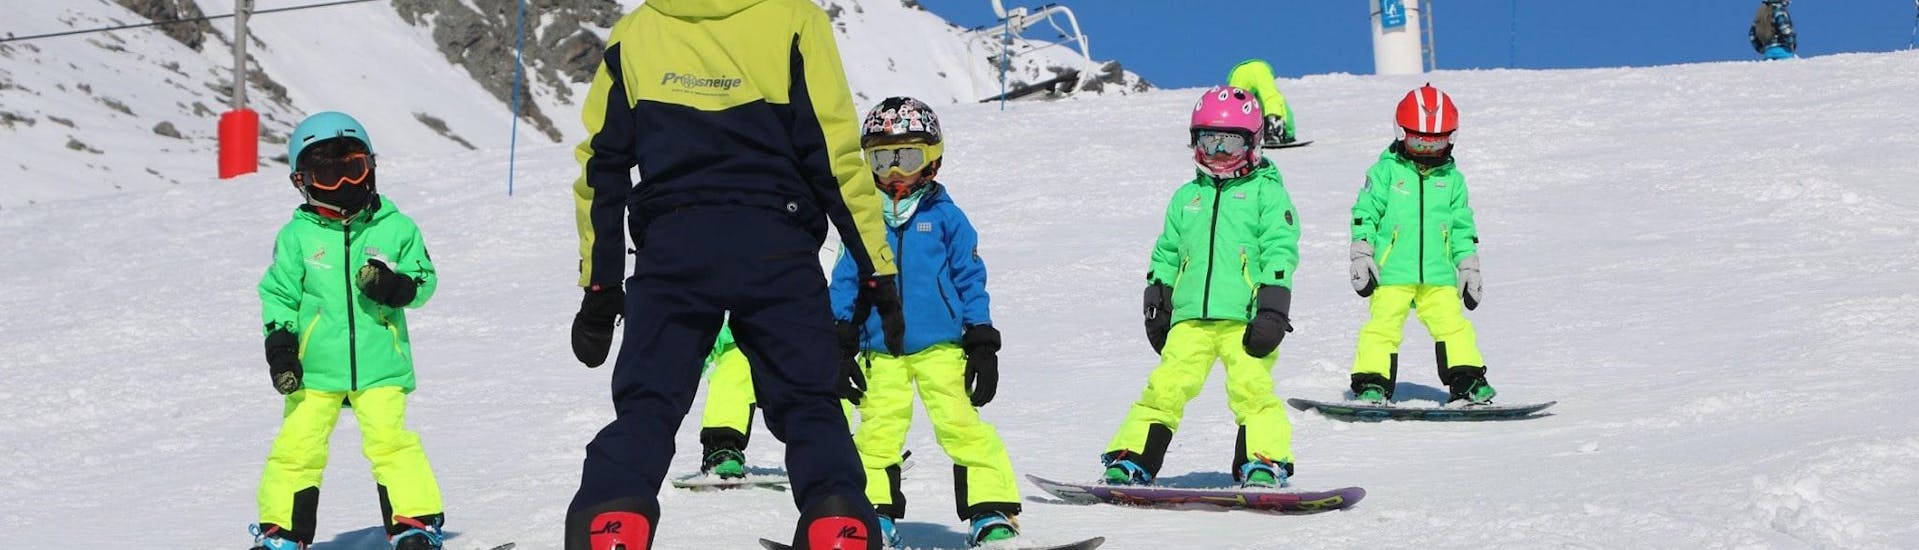 Een ski-instructeur van de skischool Prosneige Val Thorens & Les Ménuires is lachende kinderen snowboarden aan het leren tijdens Snowboardlessen voor Kinderen van Alle Leeftijden en Alle Niveaus.